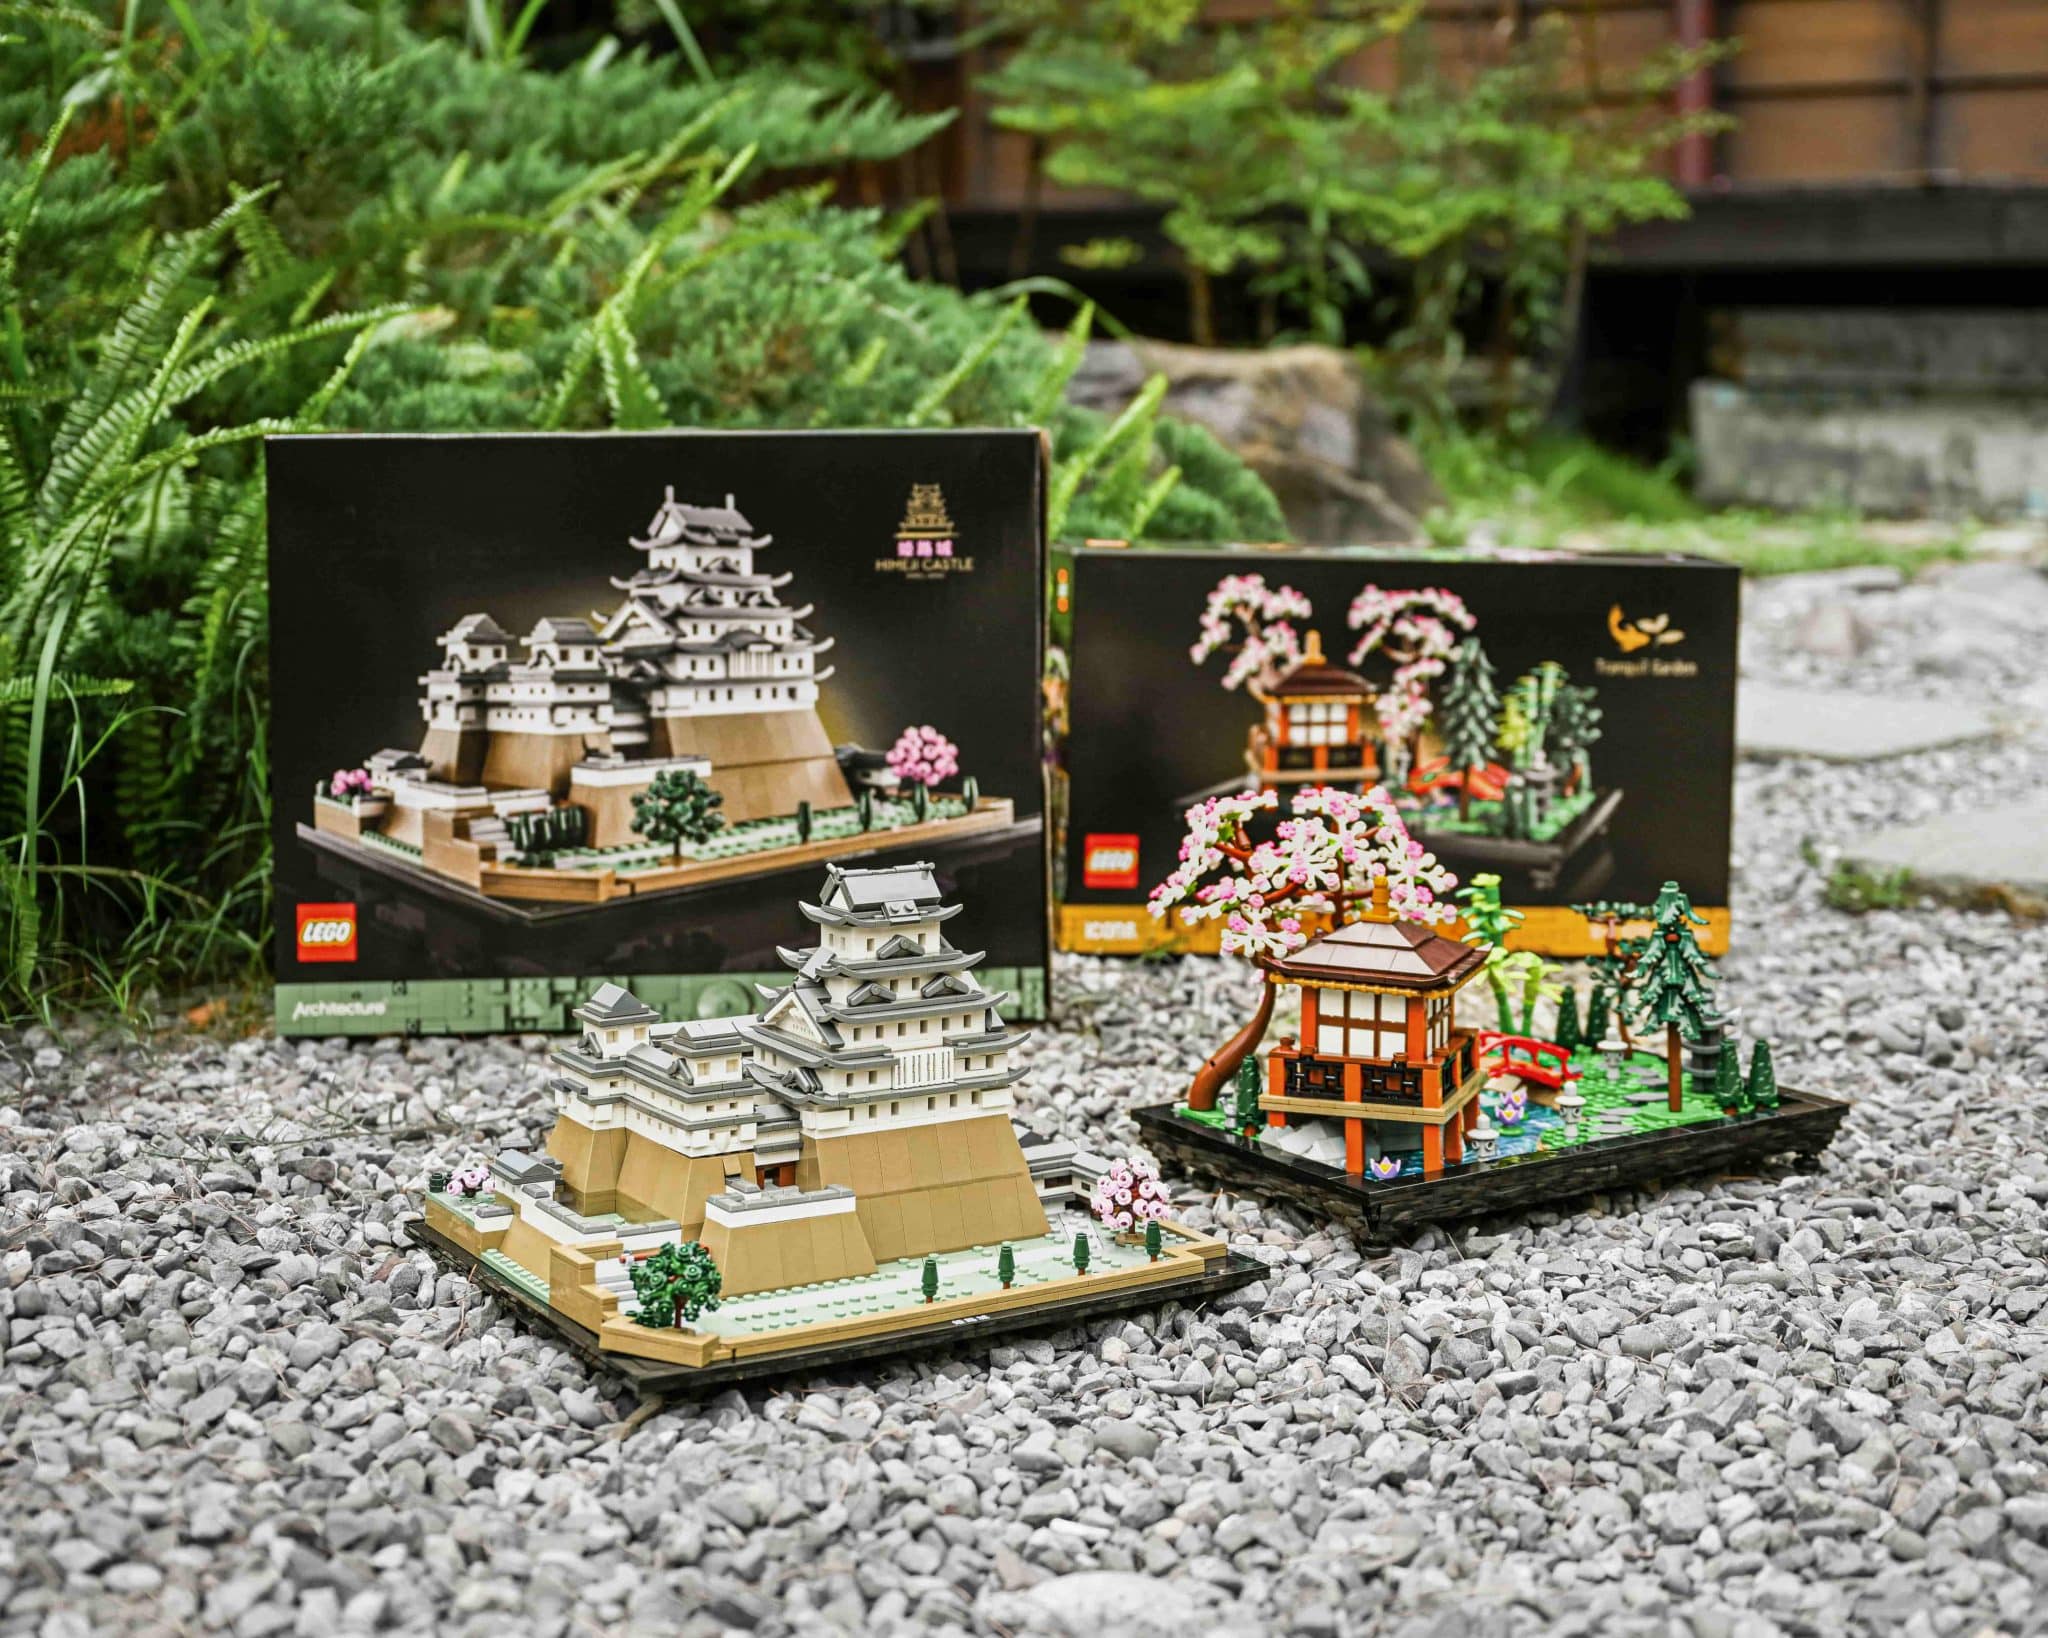 樂高建築系列新品「姬路城」與ICONS系列新品「寧靜庭園」壯麗登場-邀請玩家漫步在日本